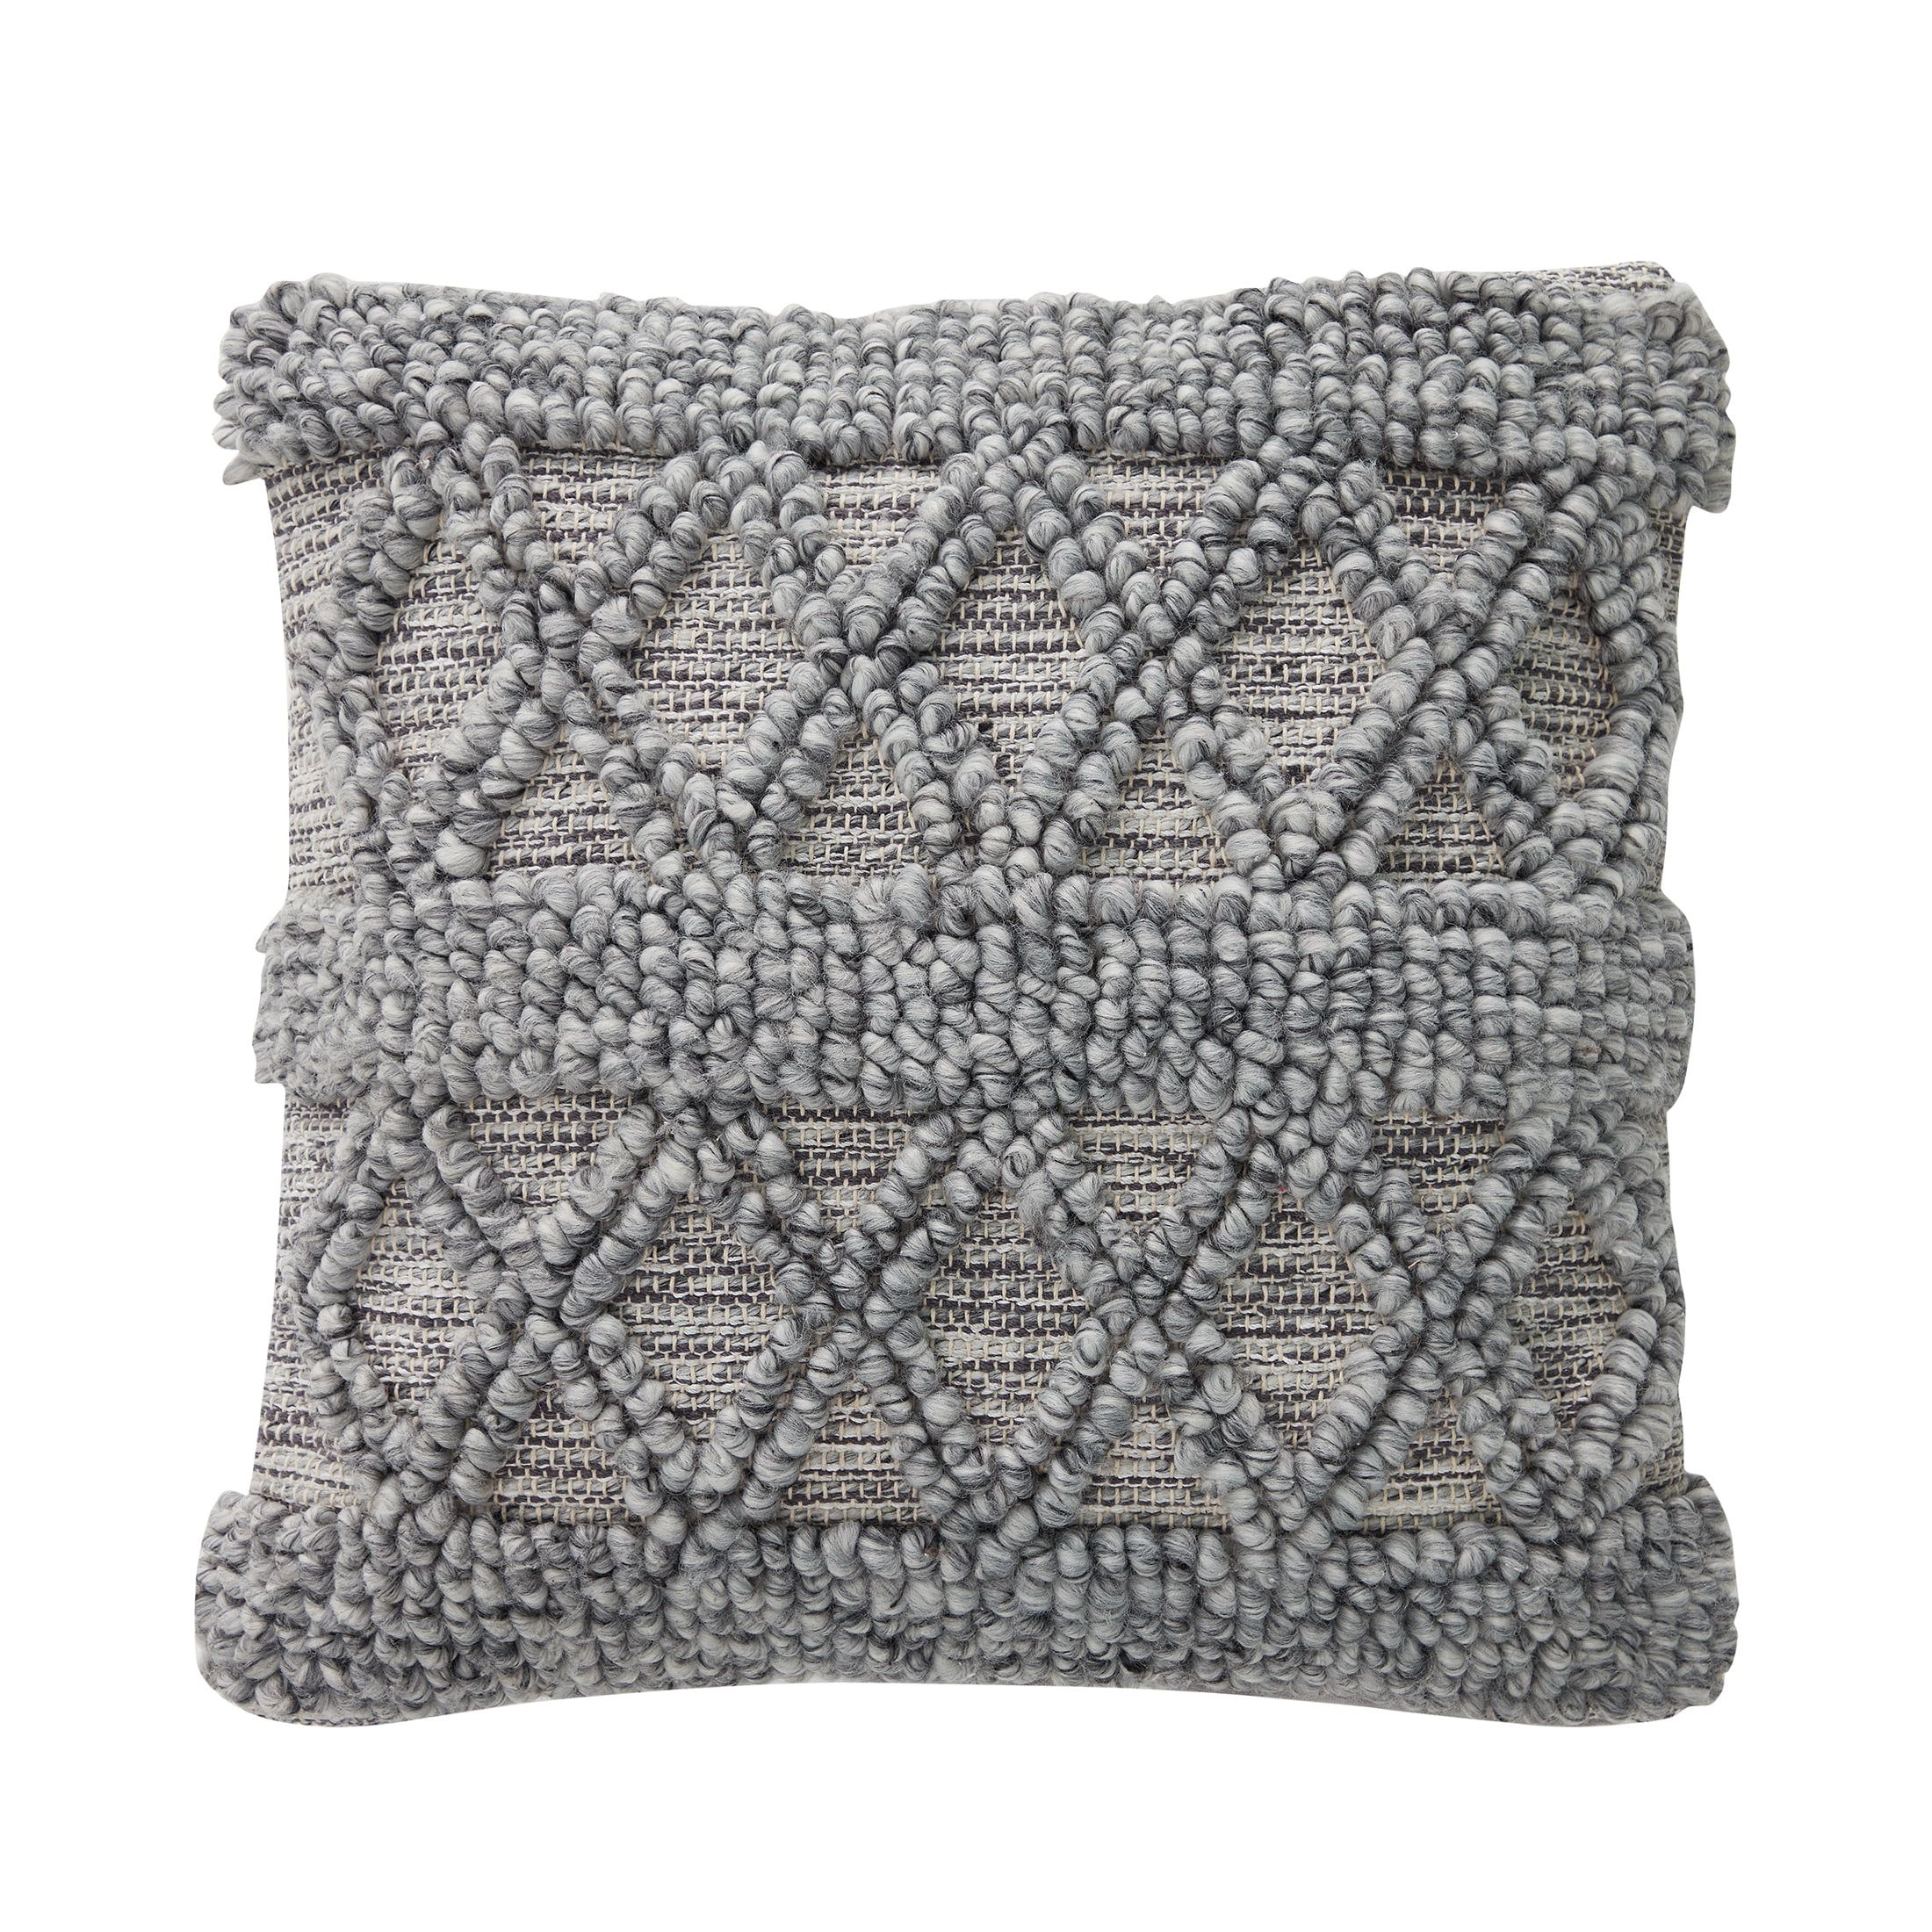 My Texas House McKinney Woven Textured Diamond Stripe Farmhouse Square Decorative Pillow Cover, 2... | Walmart (US)